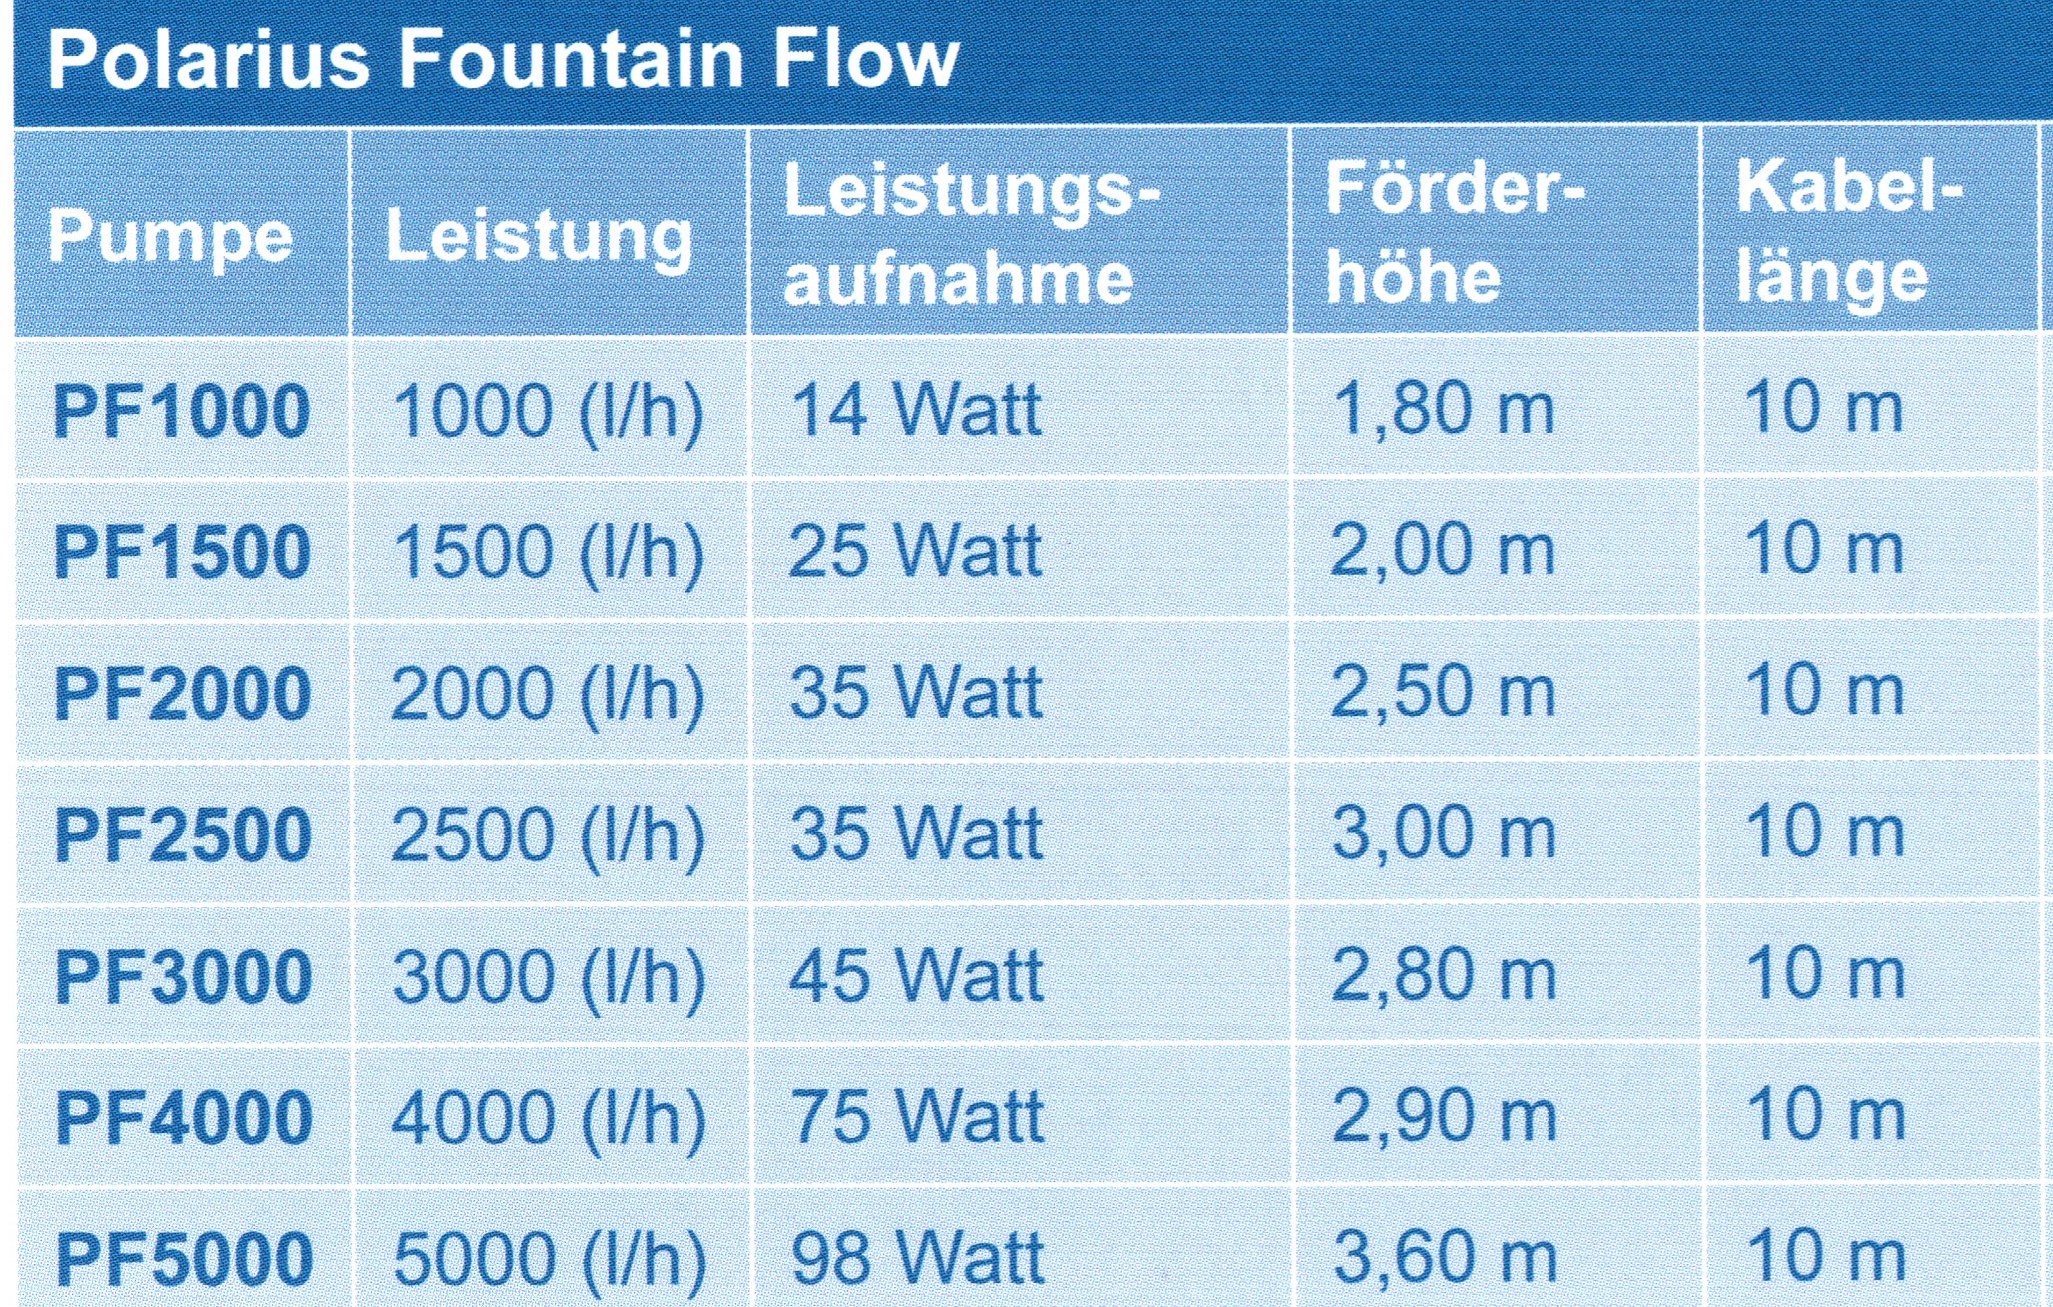 Polarius Fountain Flow